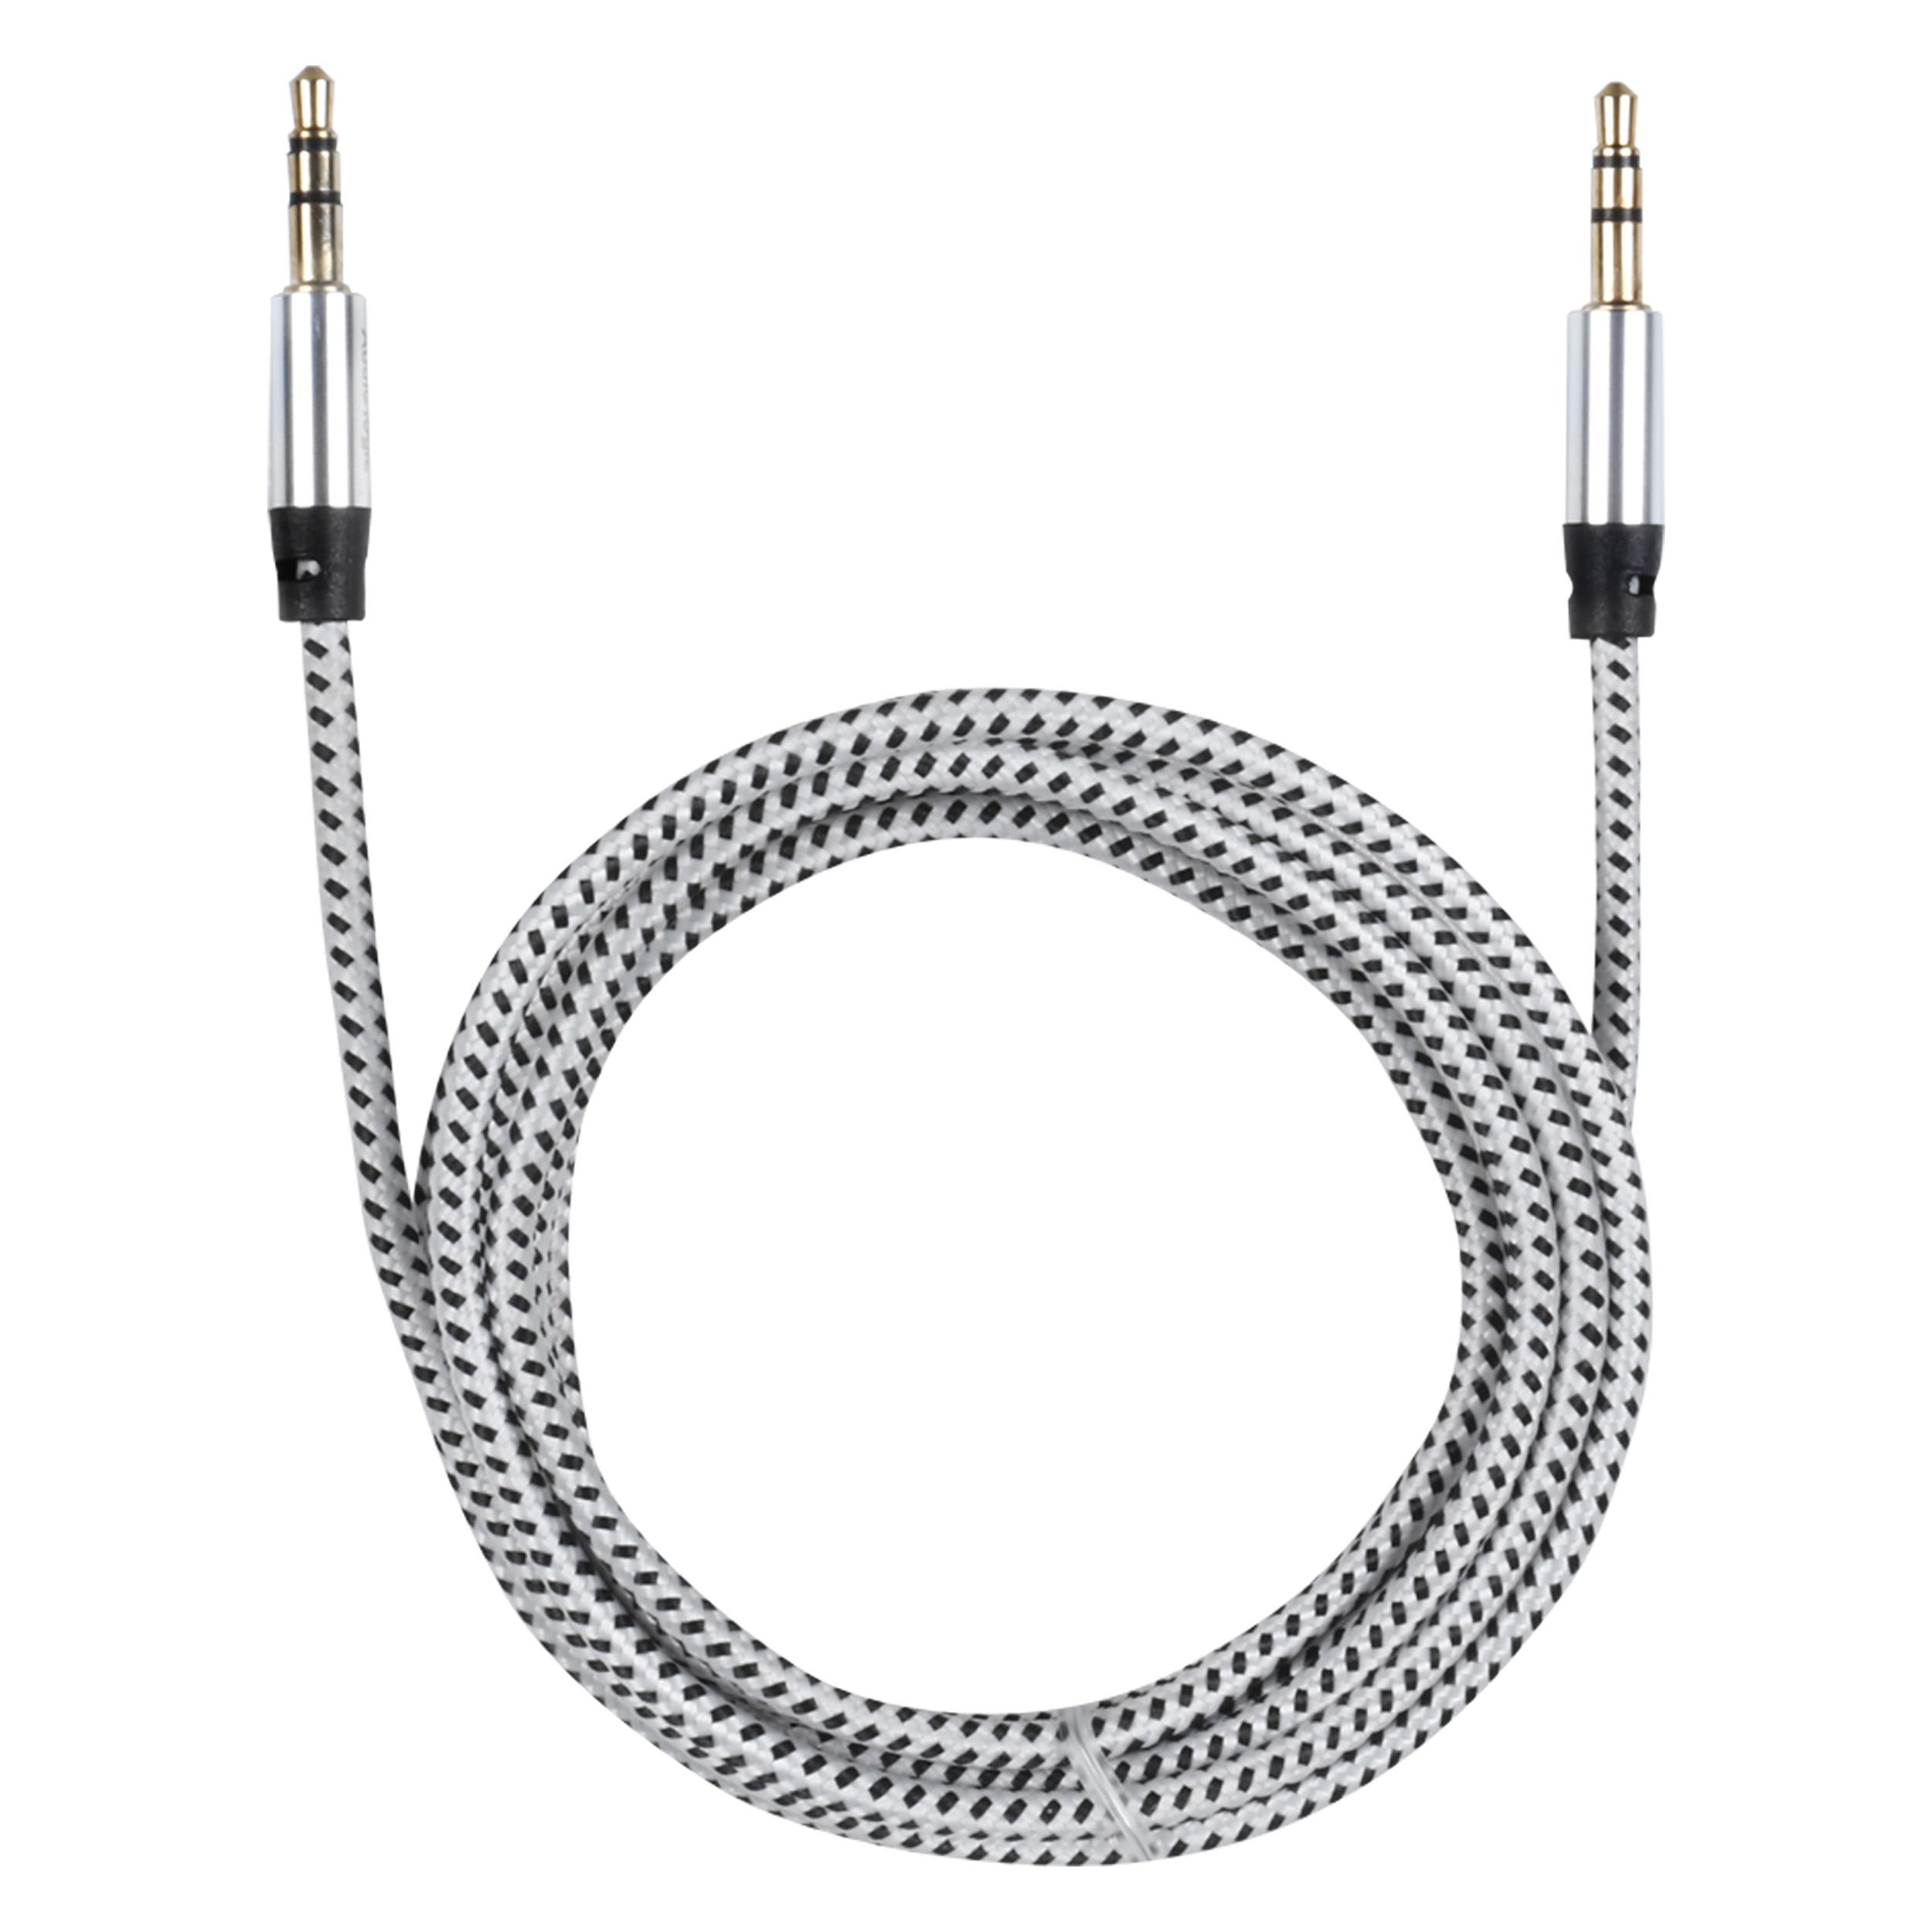 00.137.34 Q-Link  stereo kabel  - 1.5 m - zwart/wit